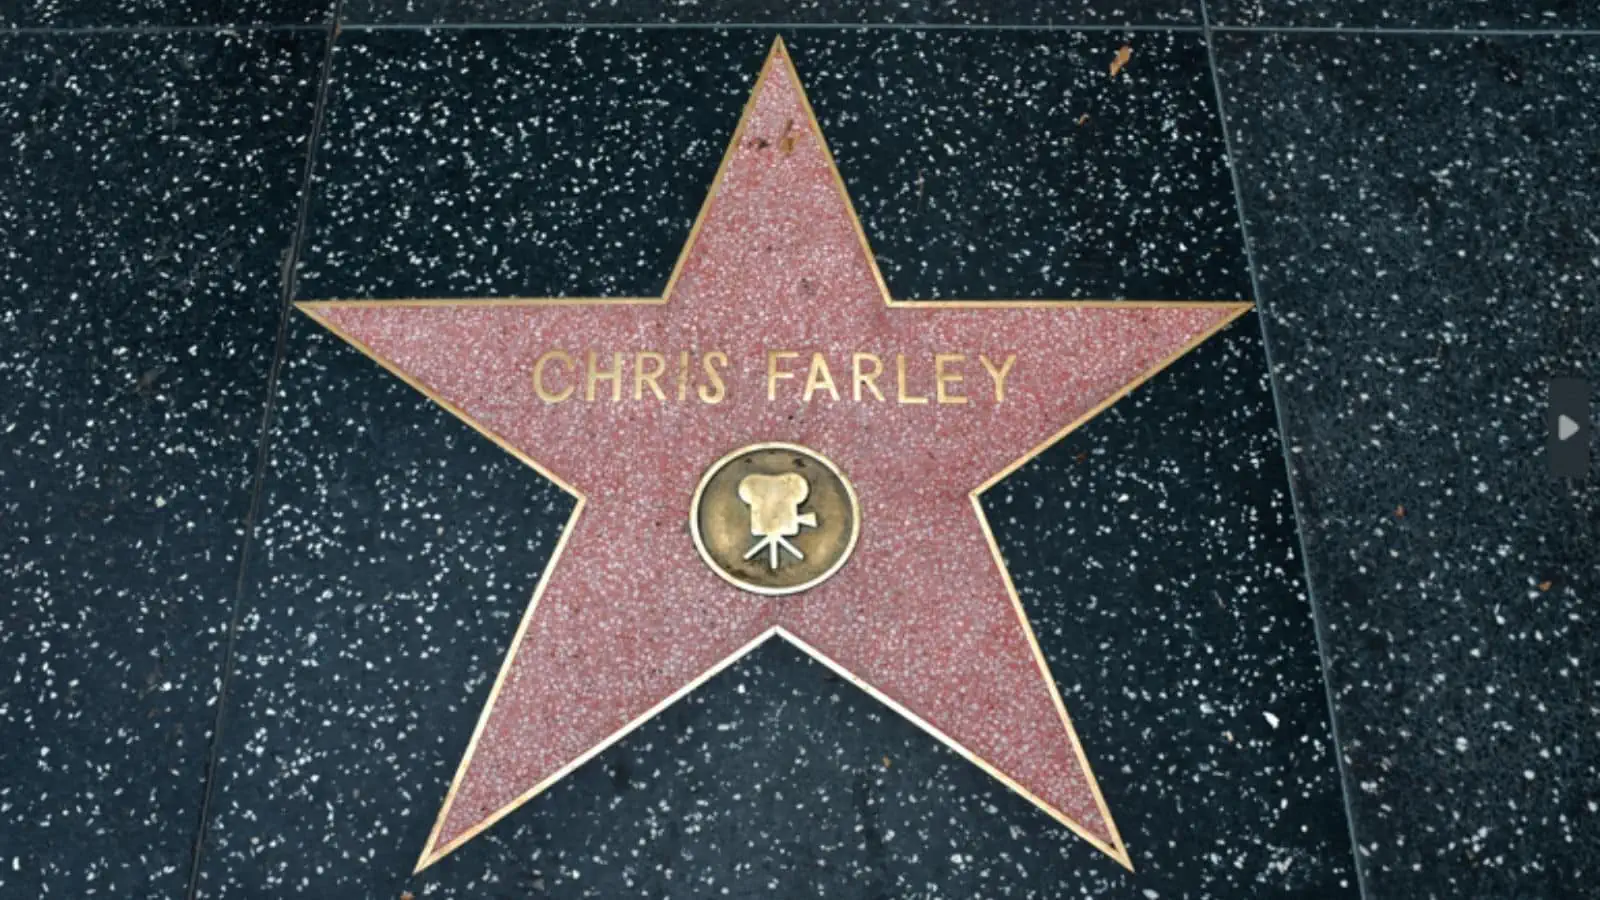 Chris Farley